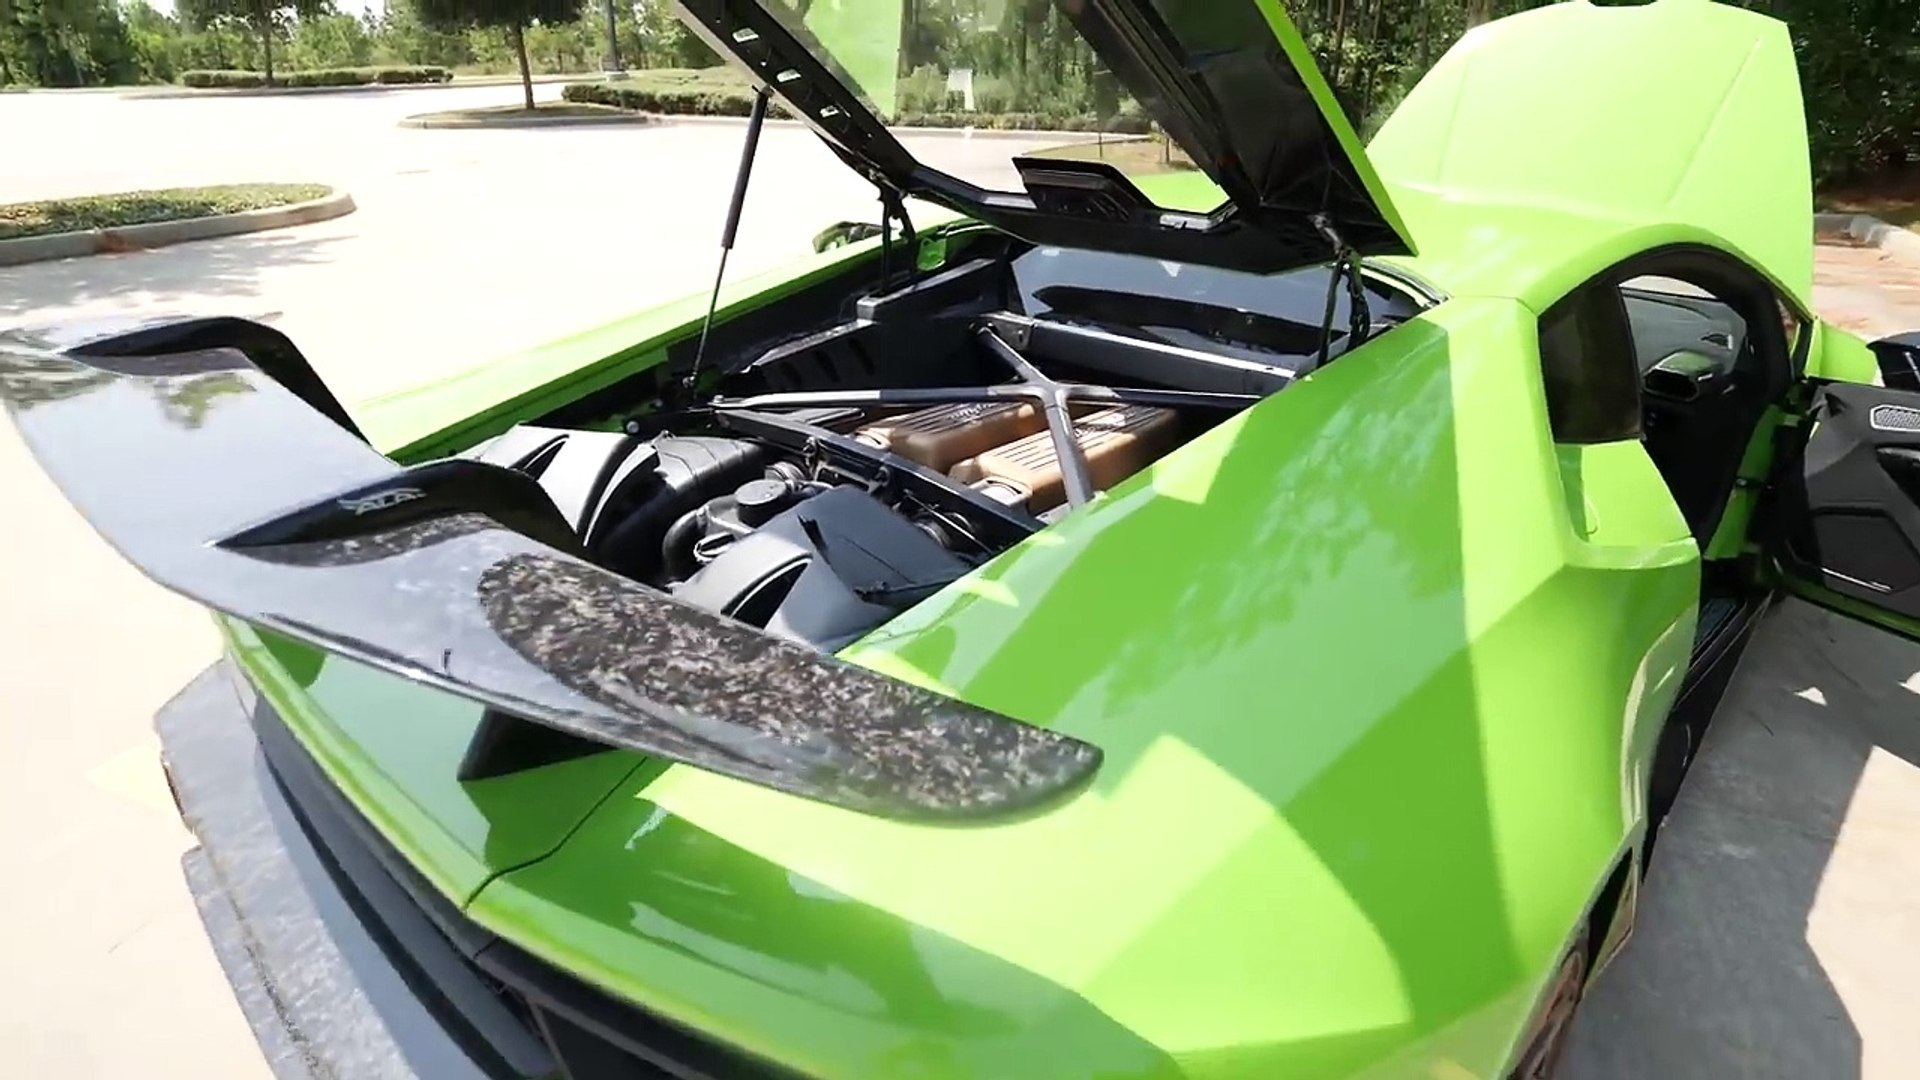 20 Year Old Buys 350 000 Lamborghini Huracan Performante